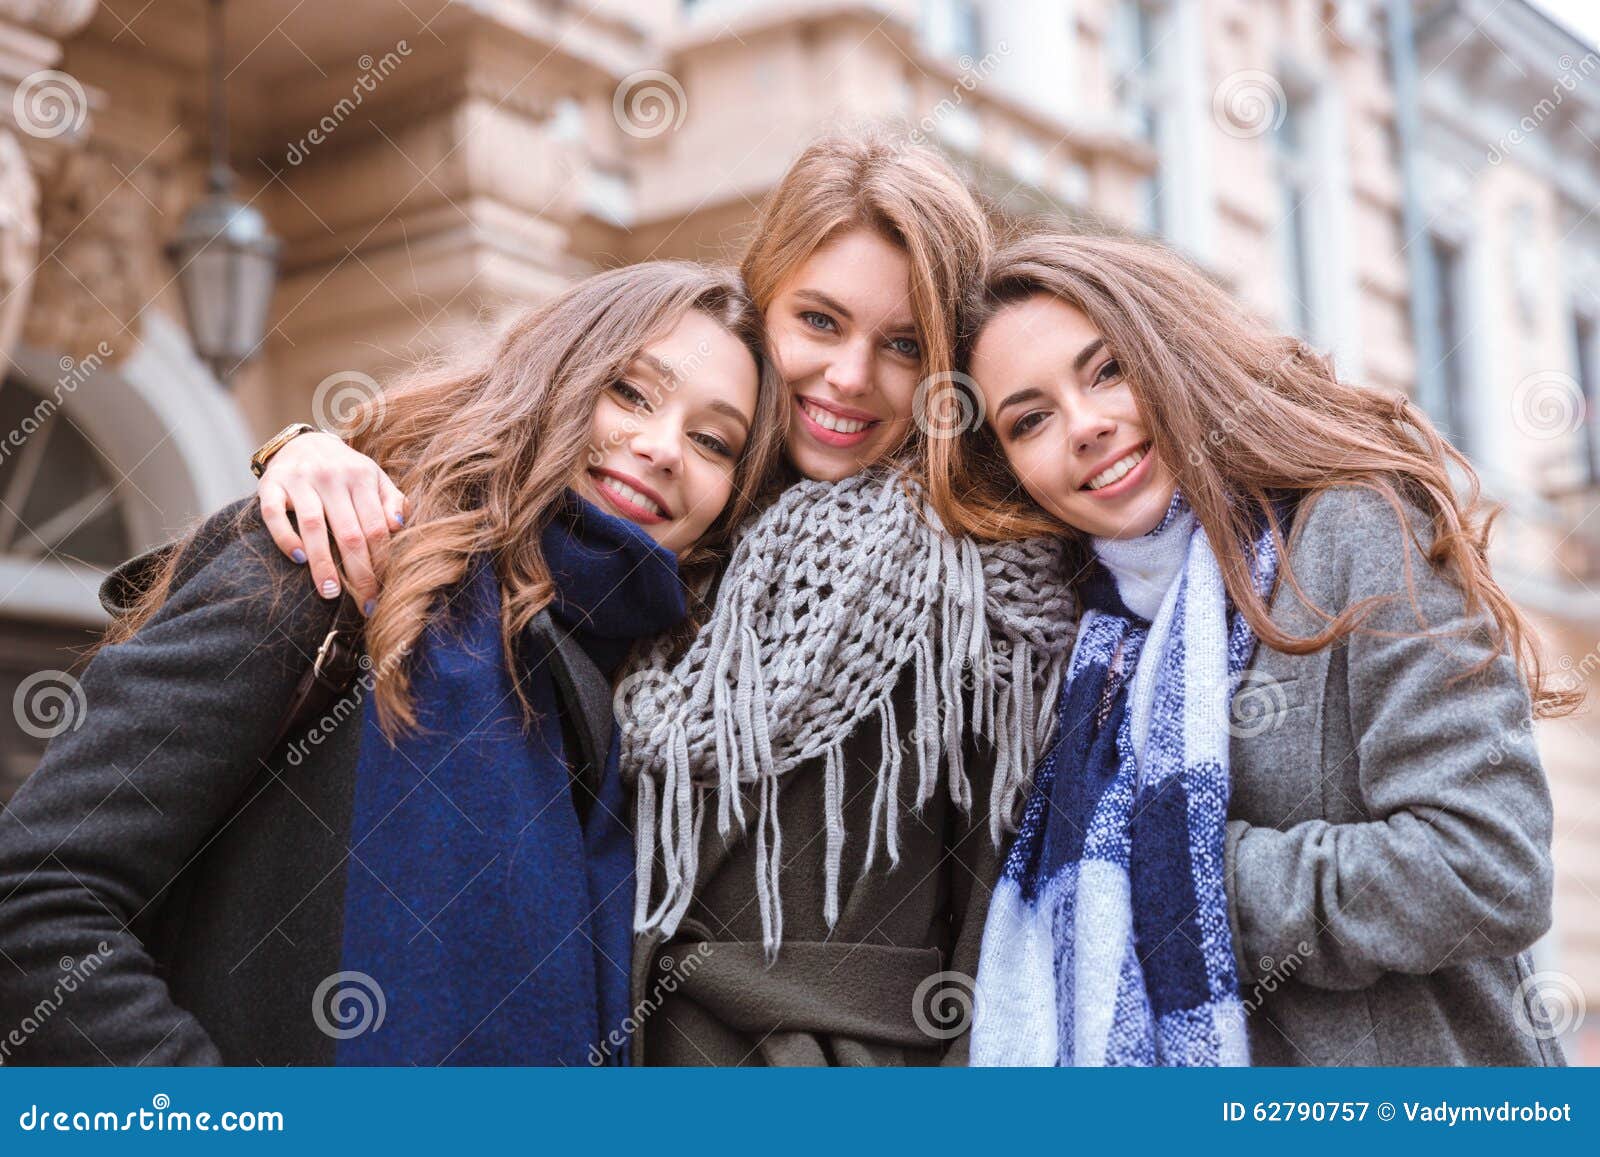 Три очаровательные. Фотография девушки подружки улыбаются. Красивые картинки девушки и подружки улыбаются. 3 Girlfriend together.